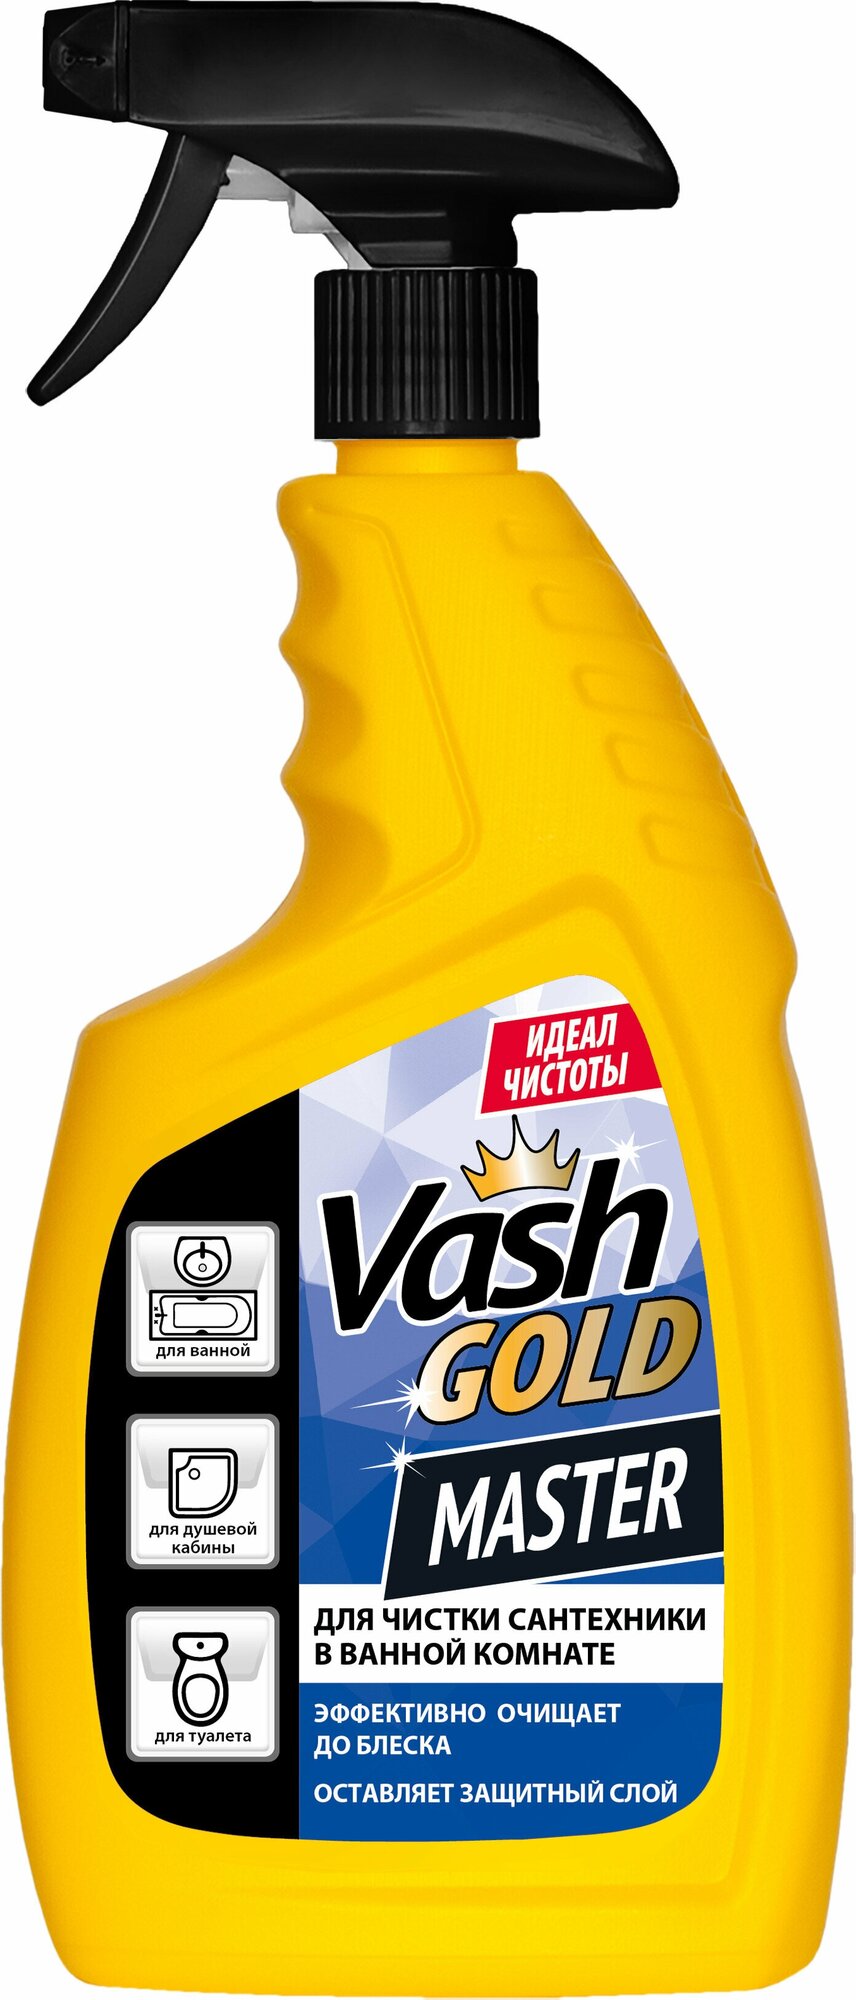 Средство для чистки сантехники 750 мл, Vash Gold Master